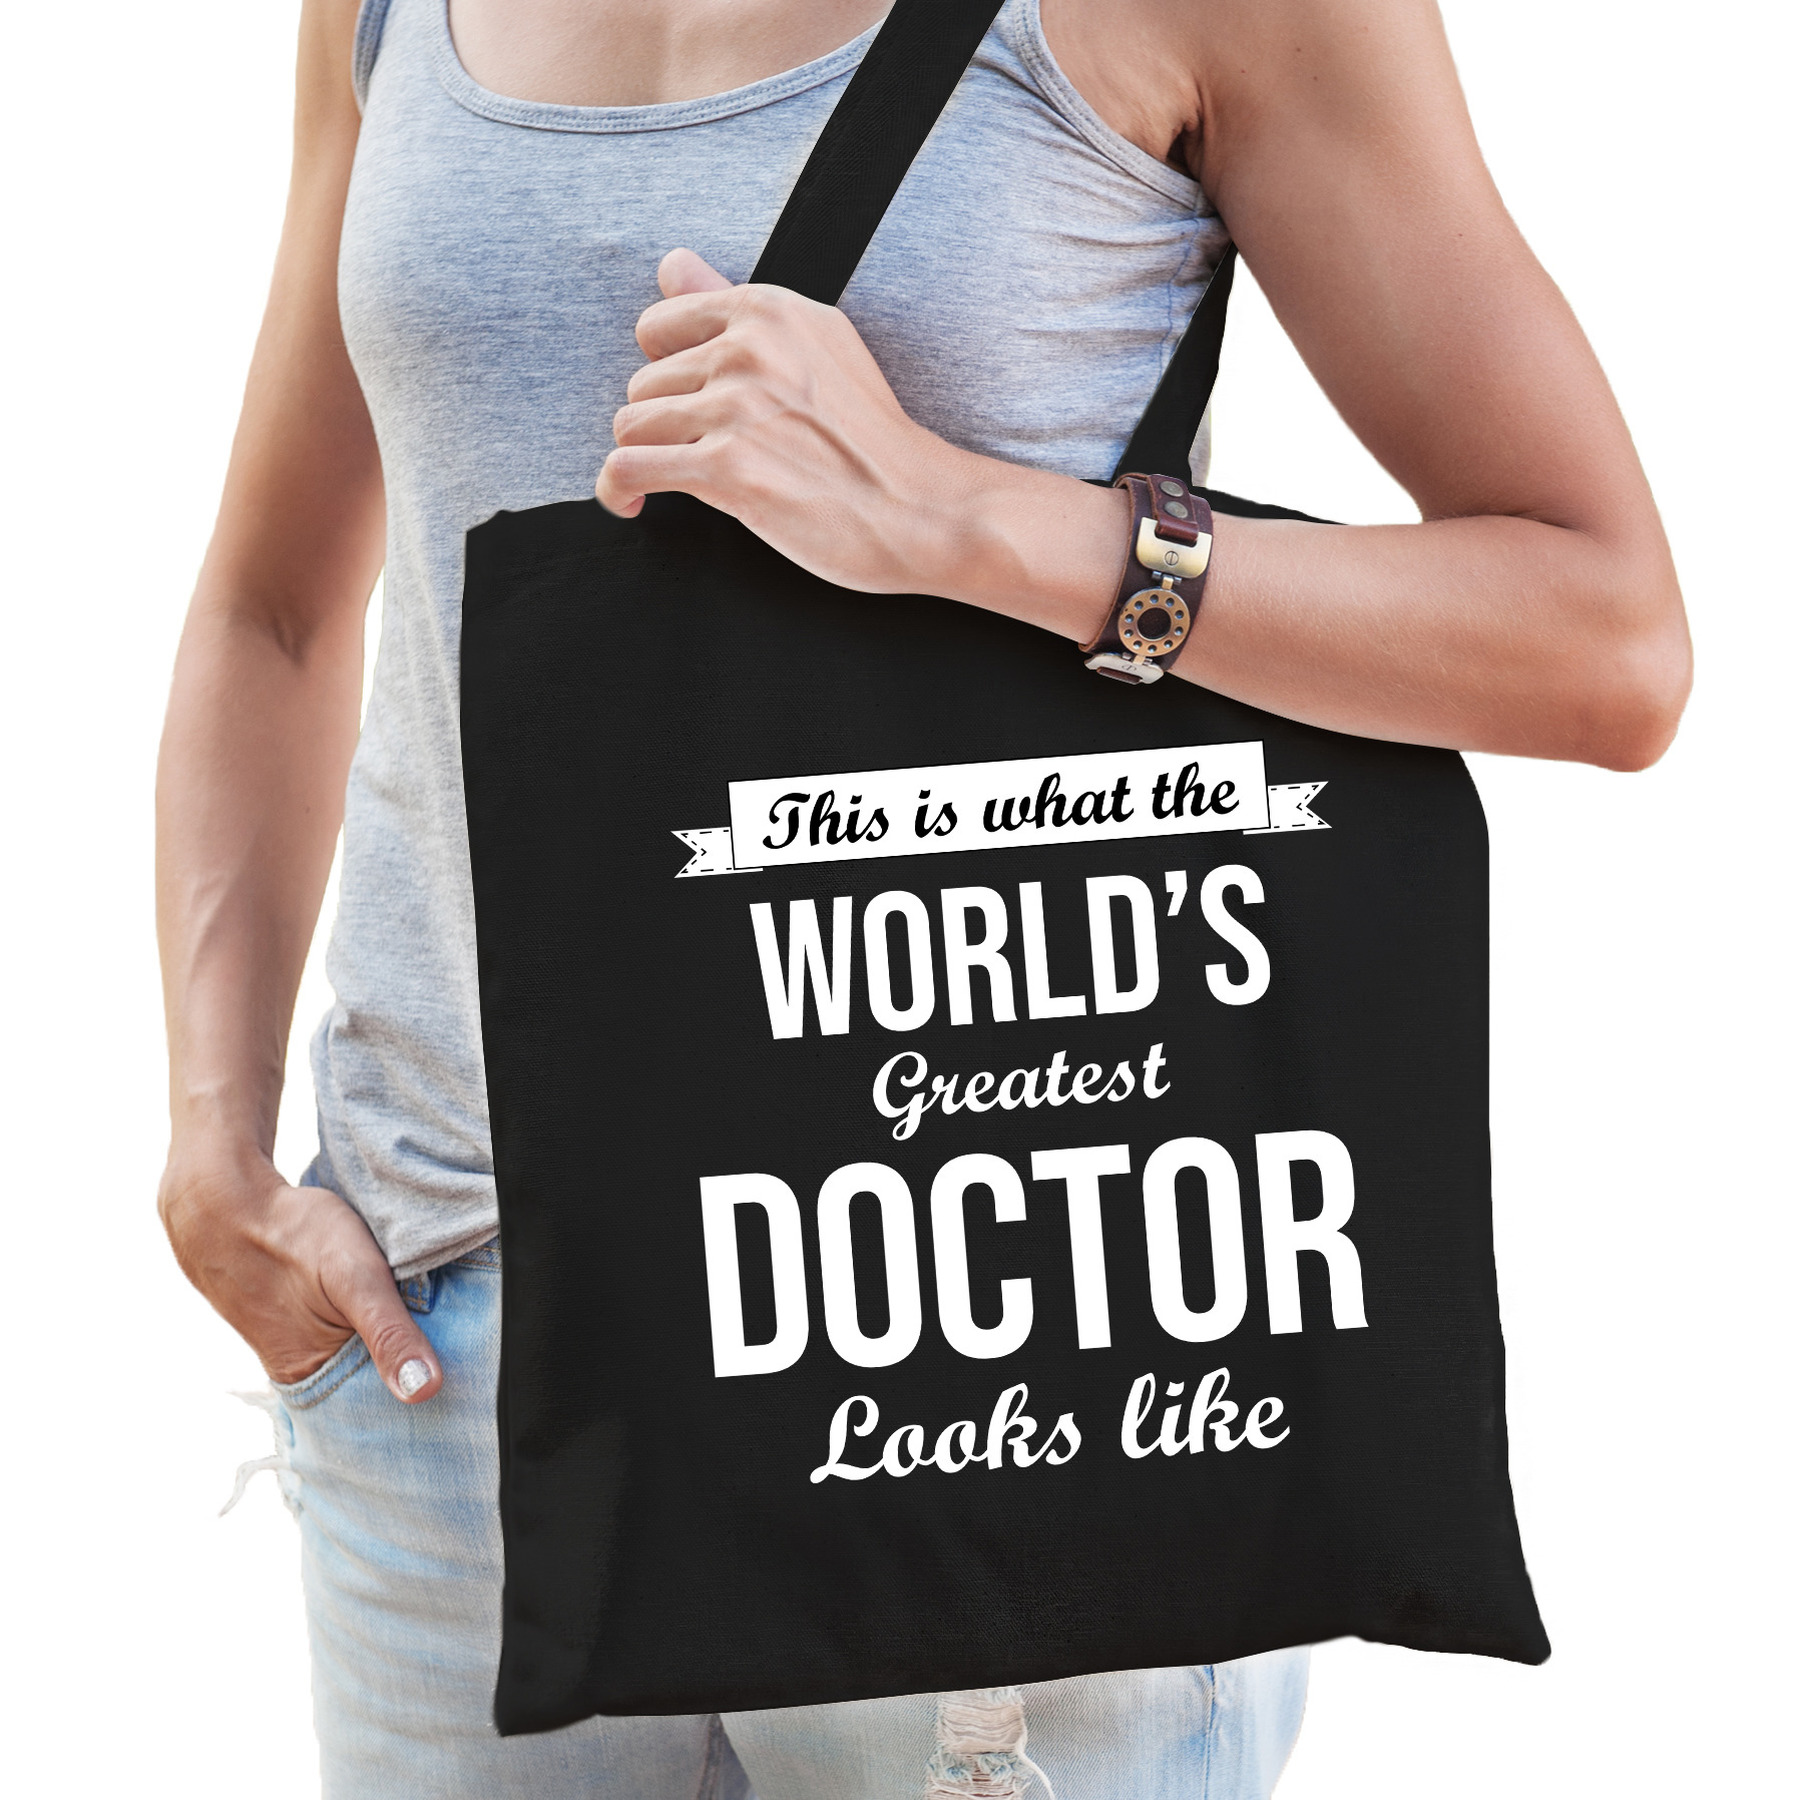 Worlds greatest doctor tas zwart volwassenen - werelds beste dokter cadeau tas